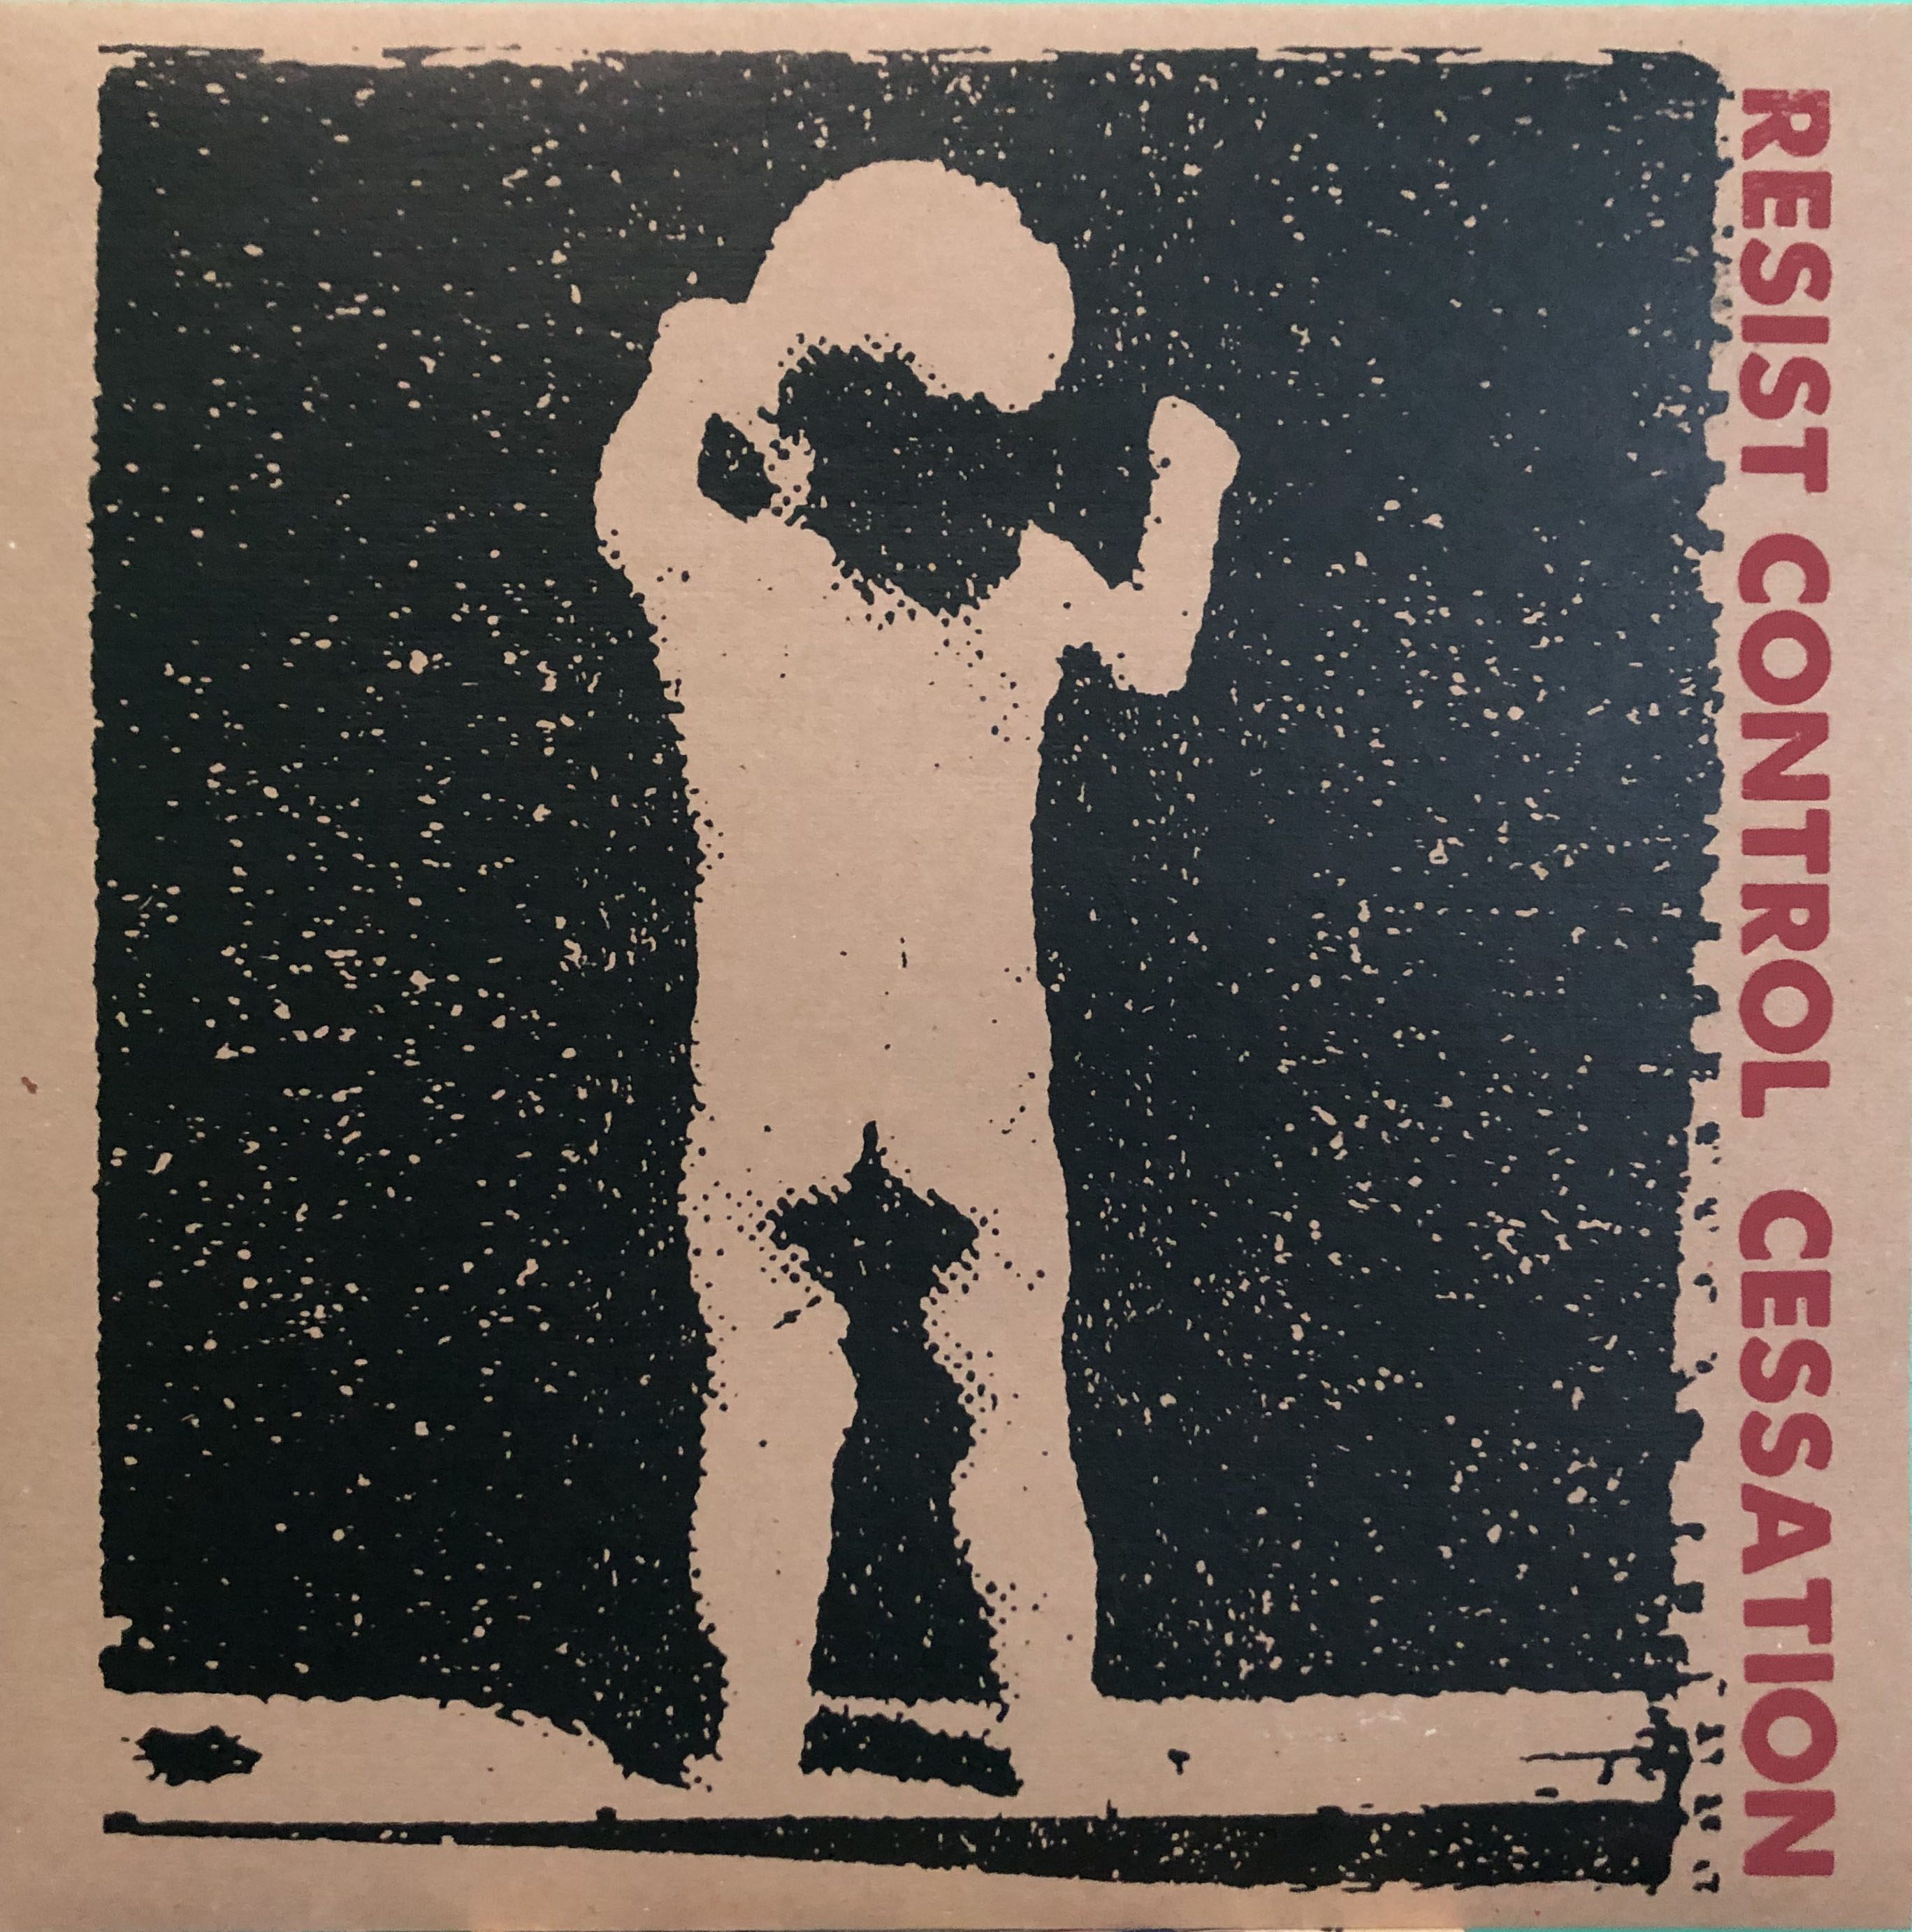 Resist Control - Cessation LP